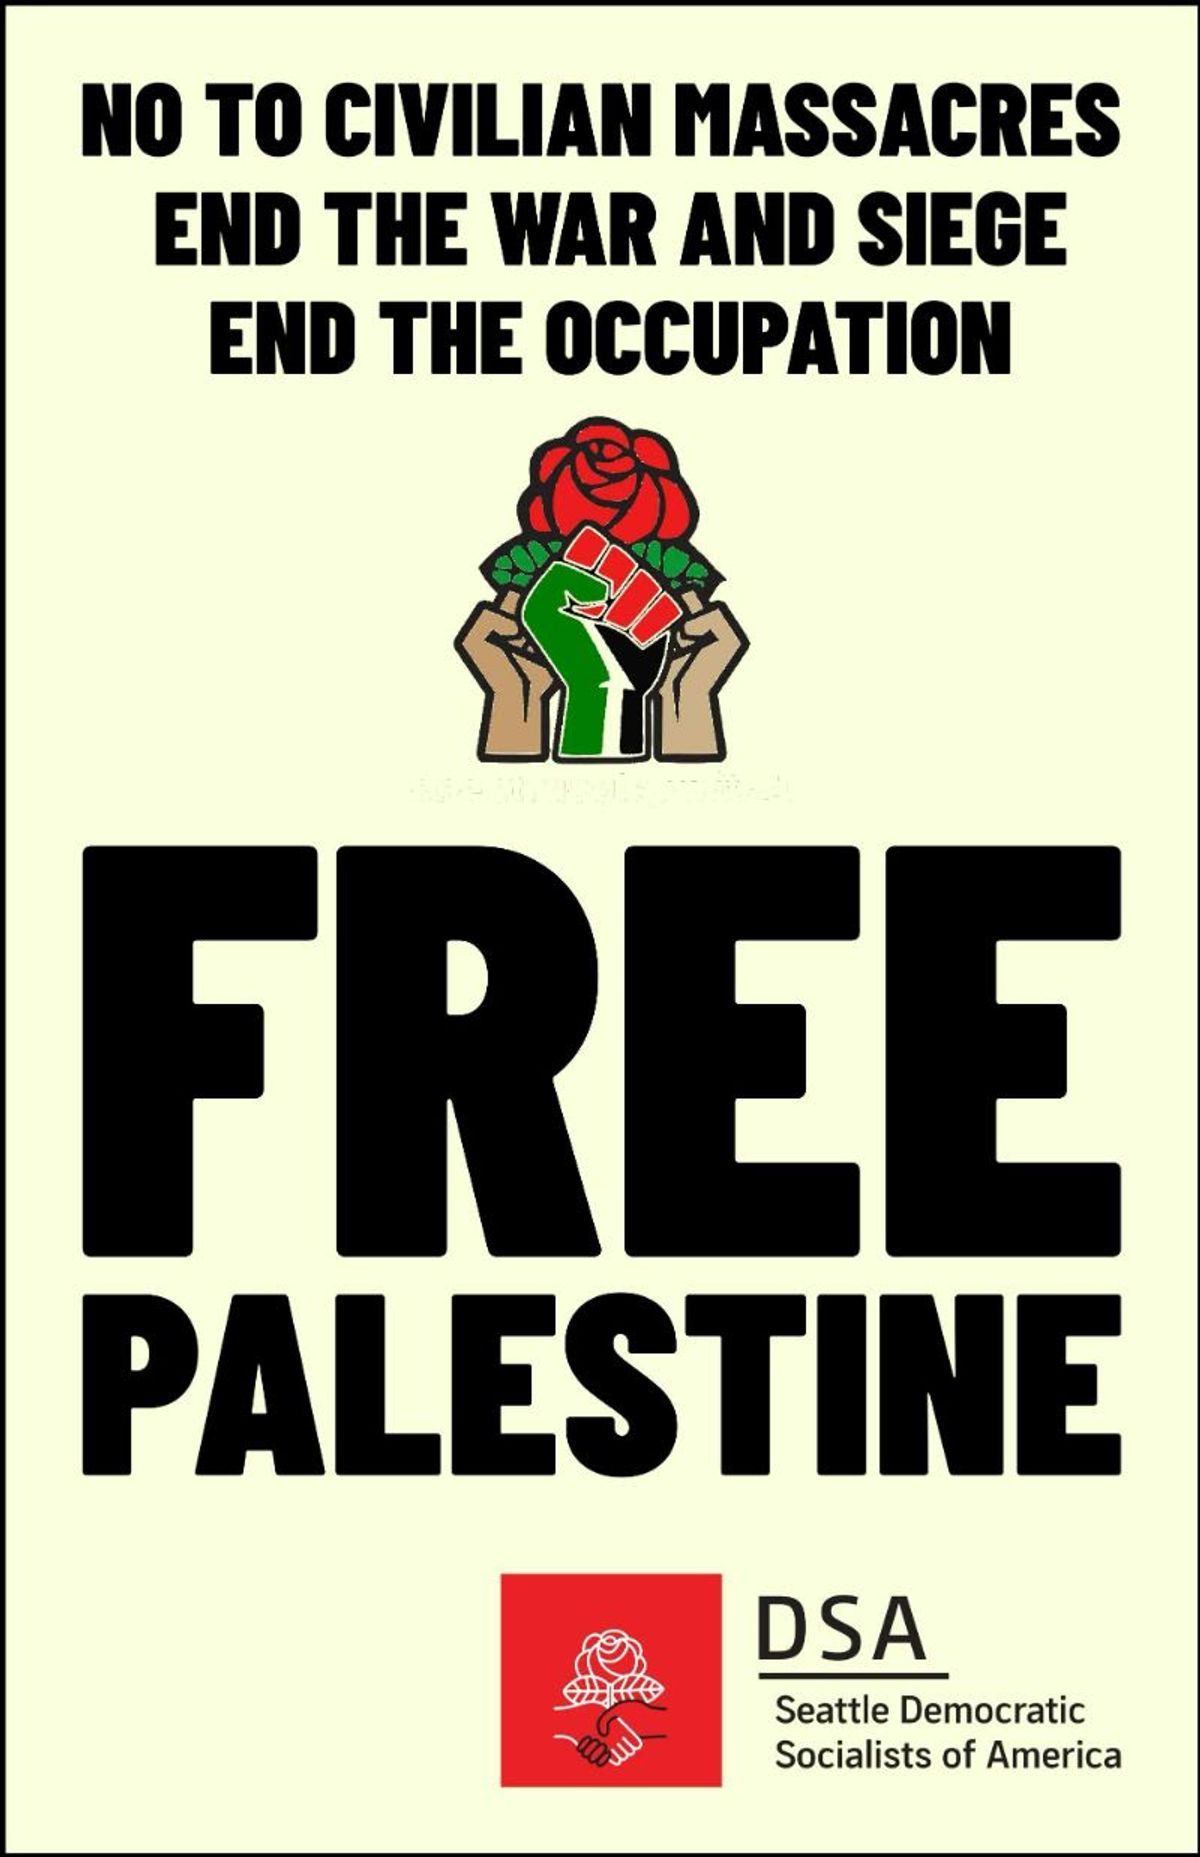 停止向以色列提供军事援助！结束对加沙的战争！在西雅图华盛顿州的西湖公园集会 - 12月23日星期六